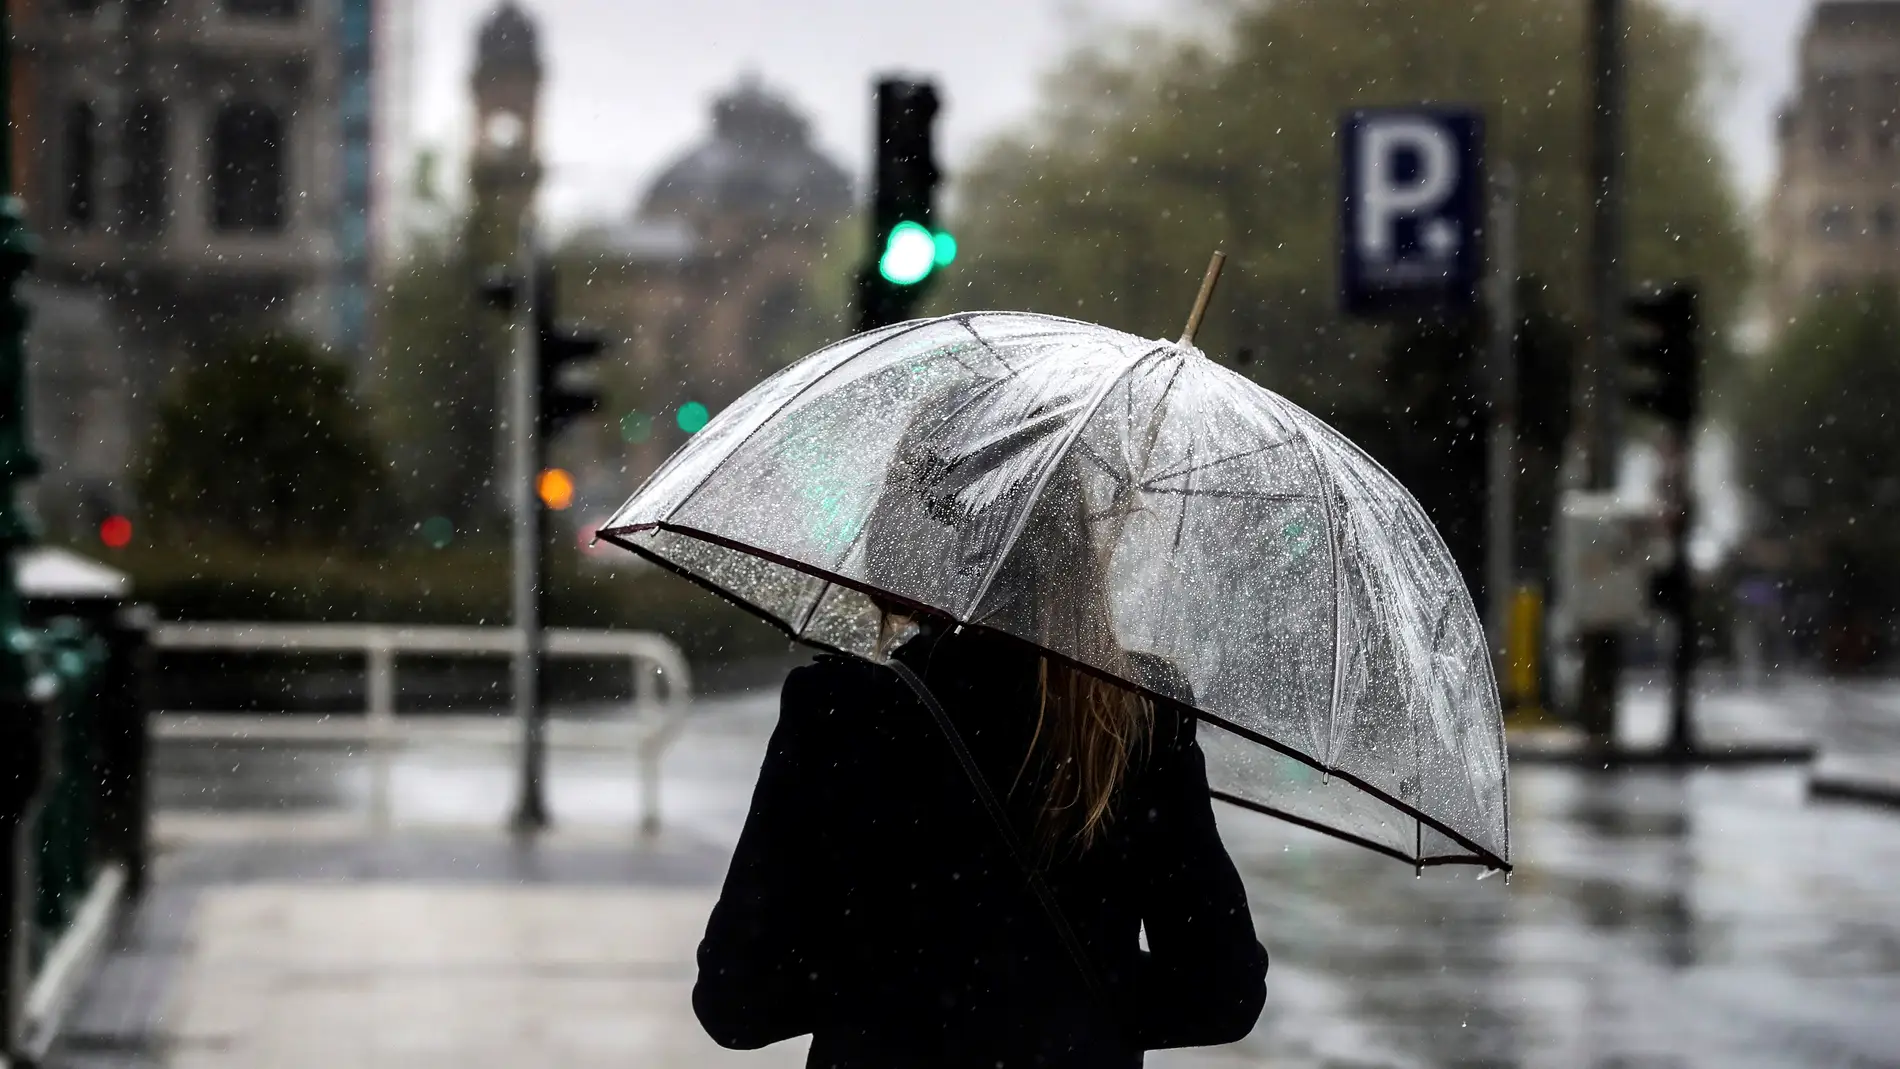 Una mujer camina bajo su paraguas